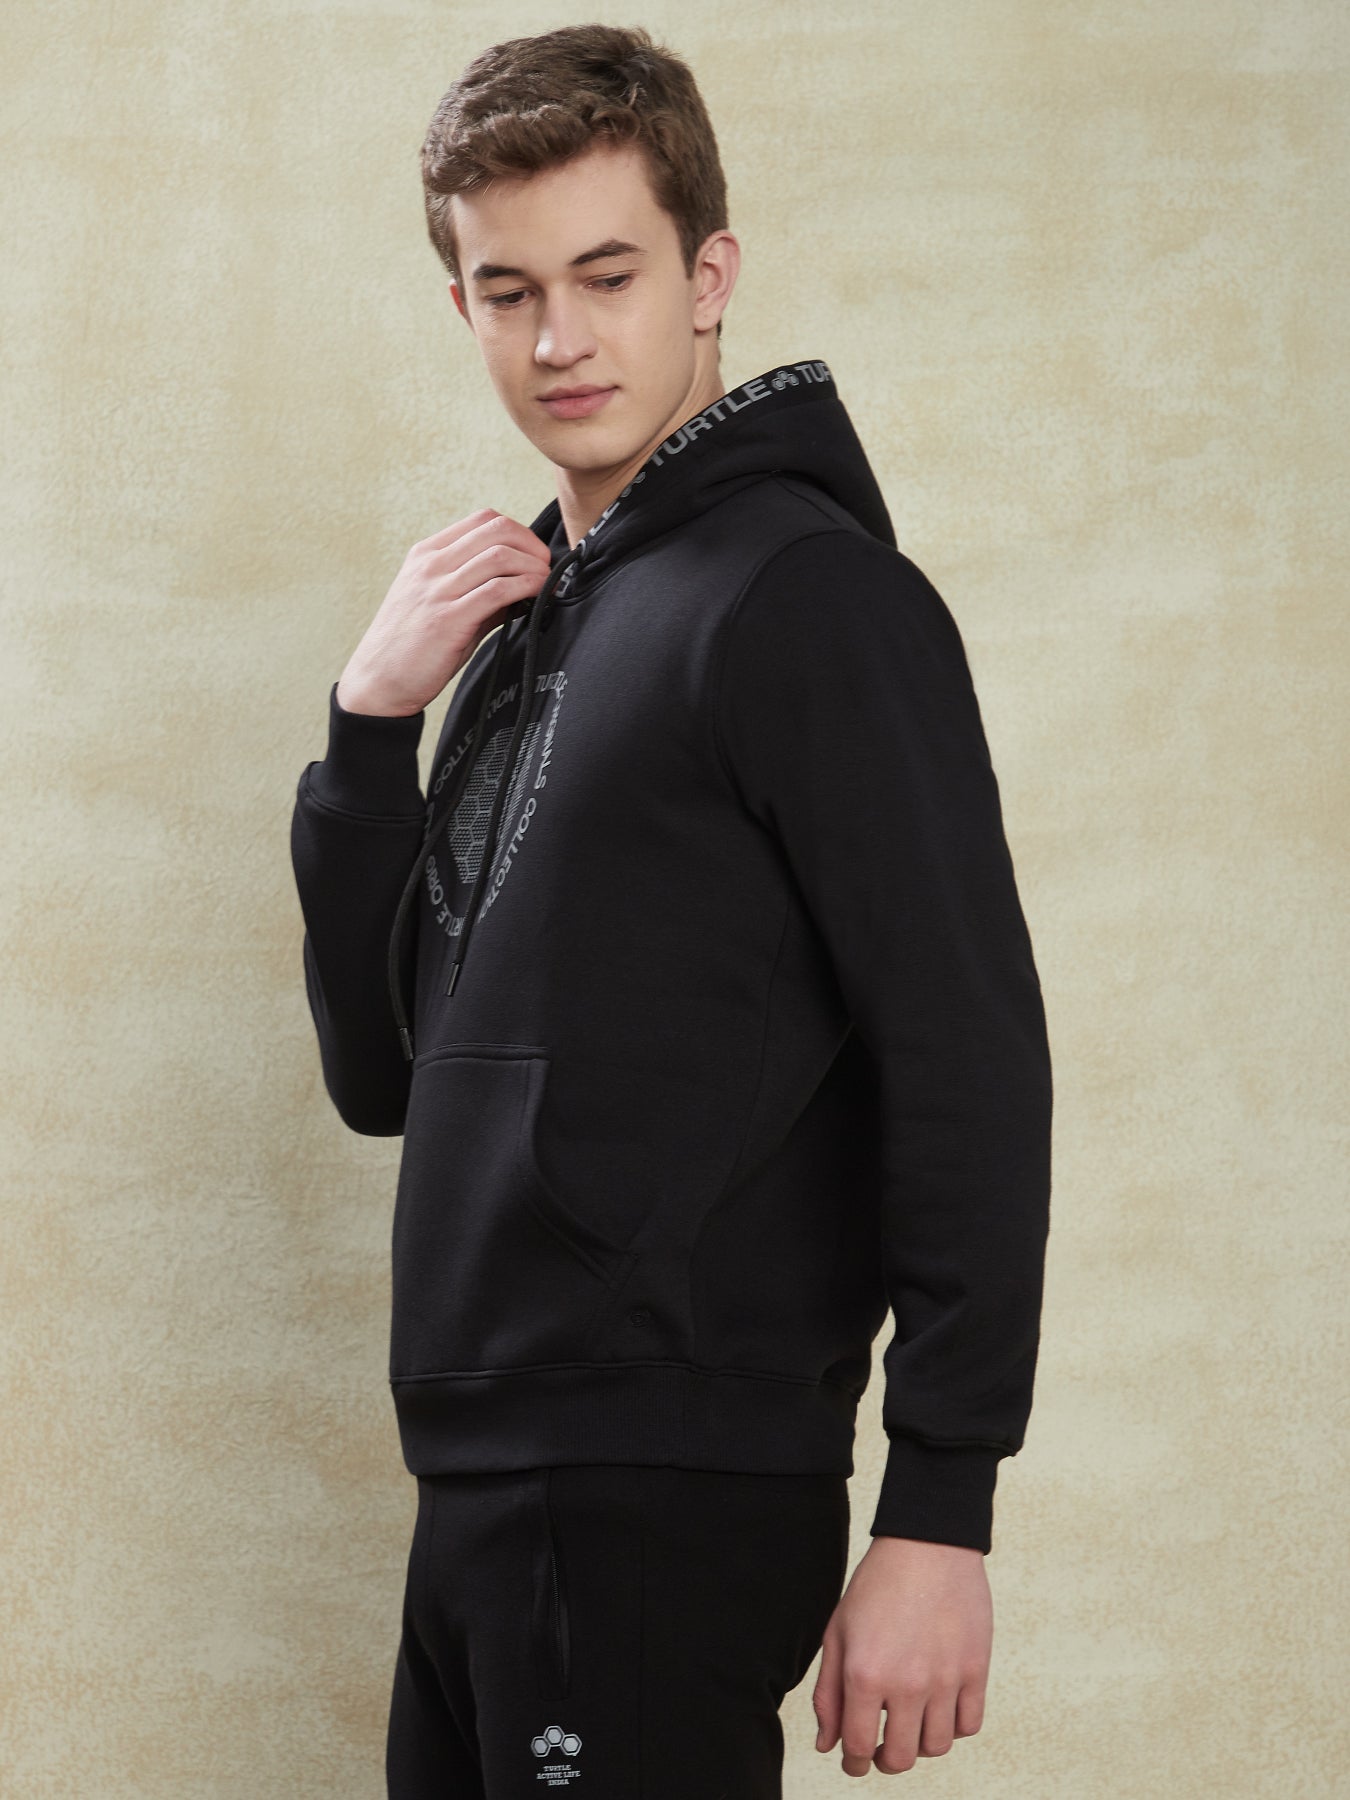 Knitted Black Printed Hoodie Full Sleeve Casual Sweatshirt